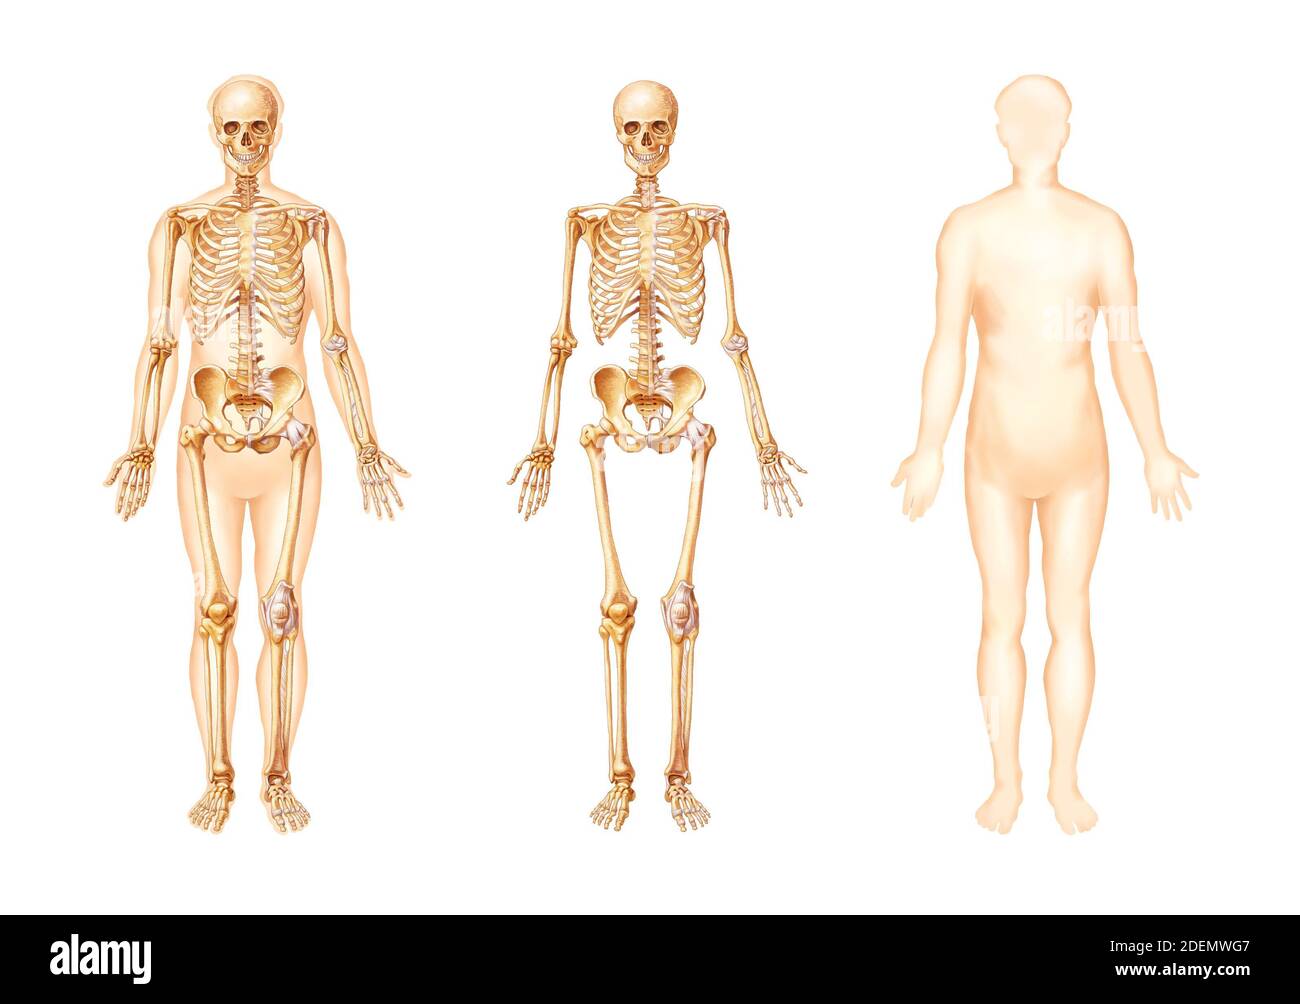 ilustración anatómica ósea del cuerpo humano Foto de stock